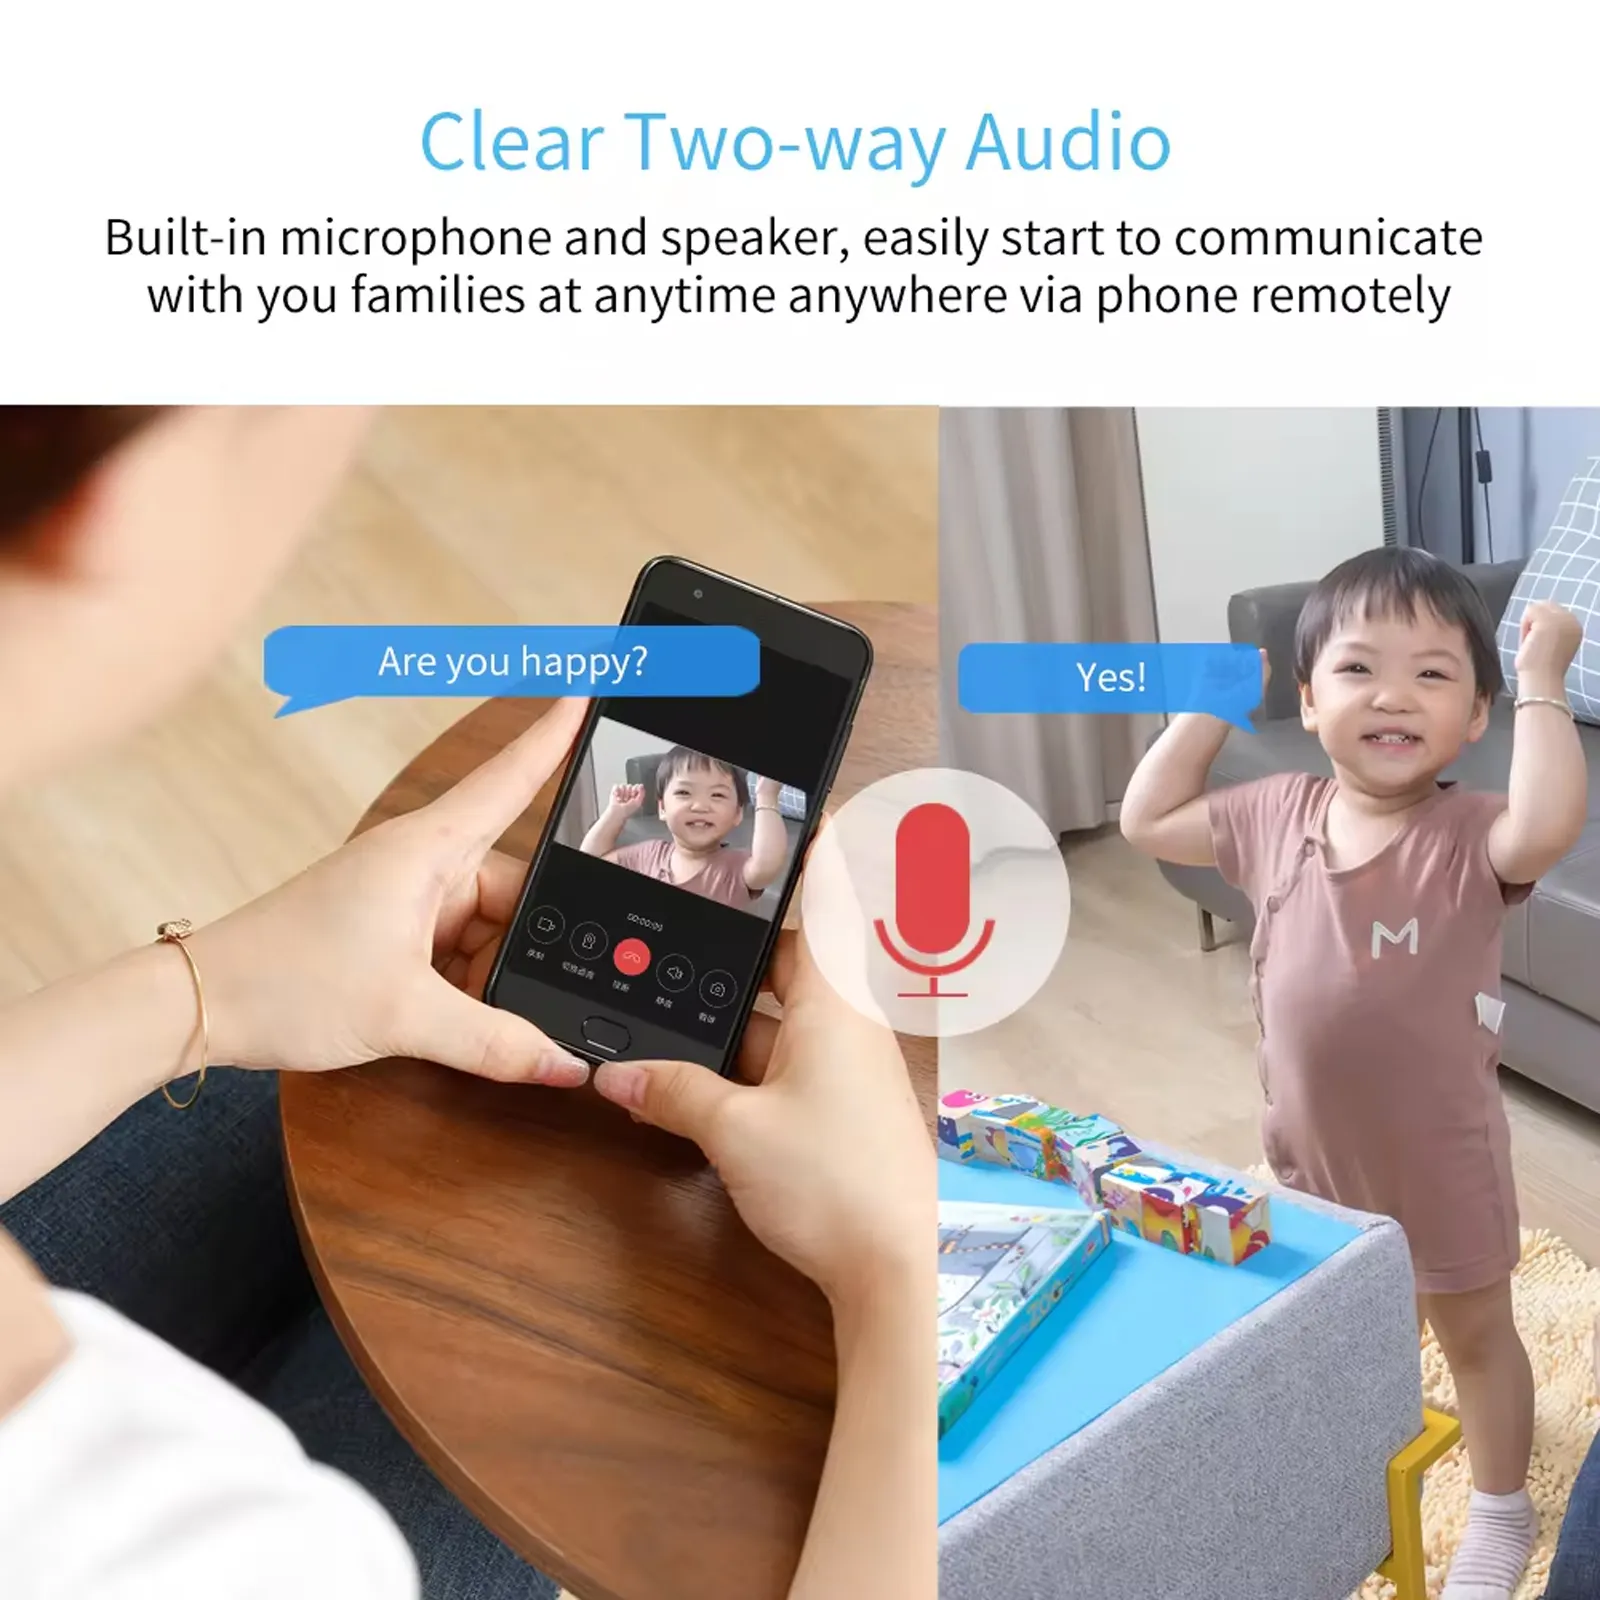 Kamera WIFI rumah harga pabrik kamera deteksi gerakan pintar nirkabel 1080p untuk Monitor bayi